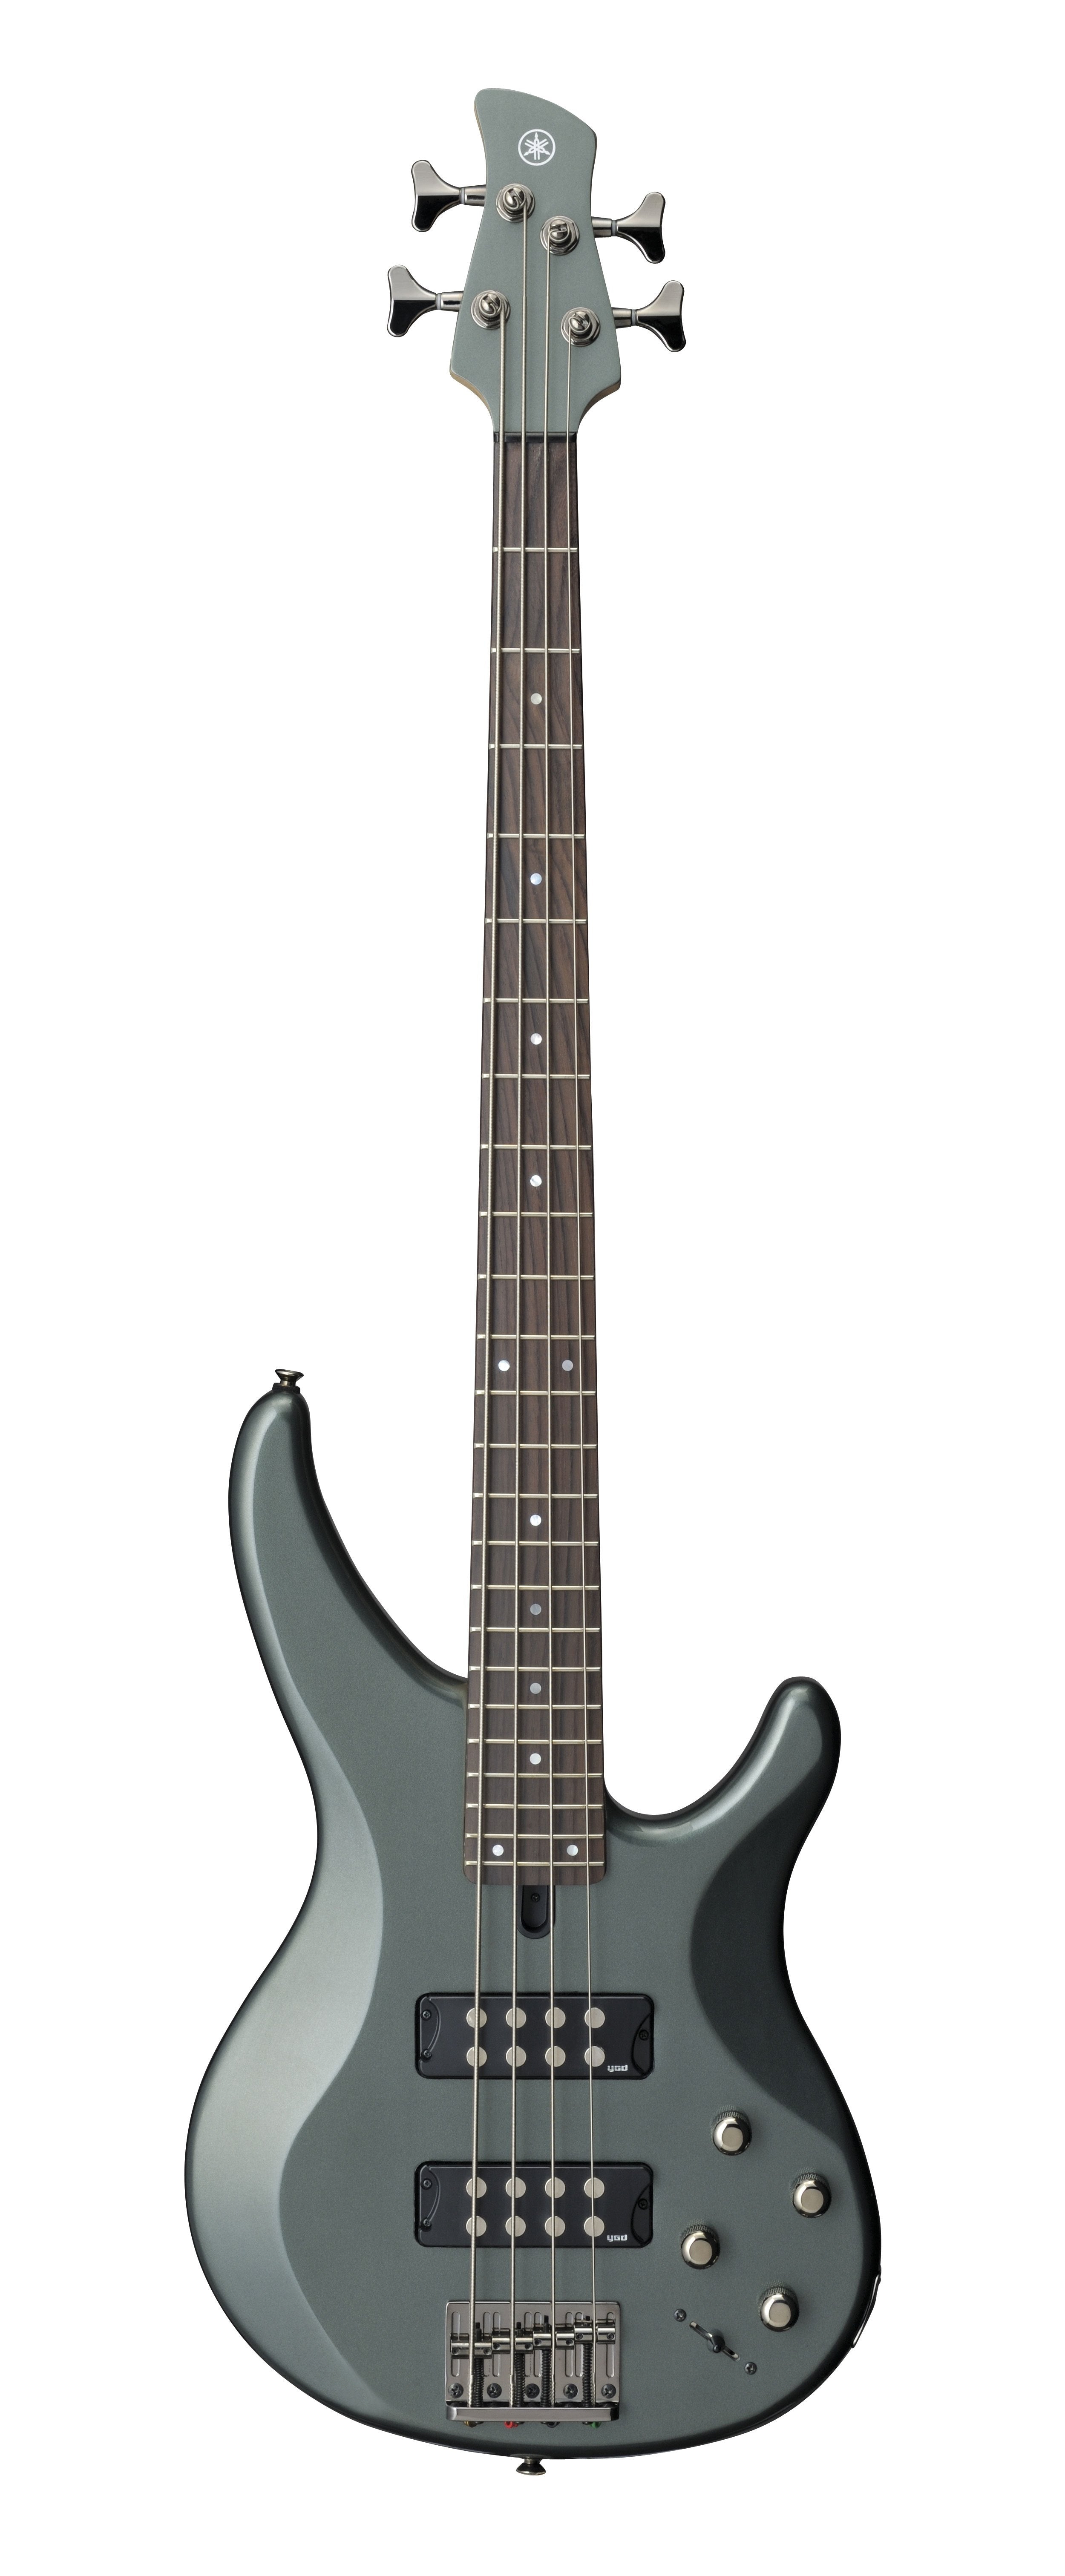 YAMAHA TRBX304 Electric Bass Guitar (Mist Green)